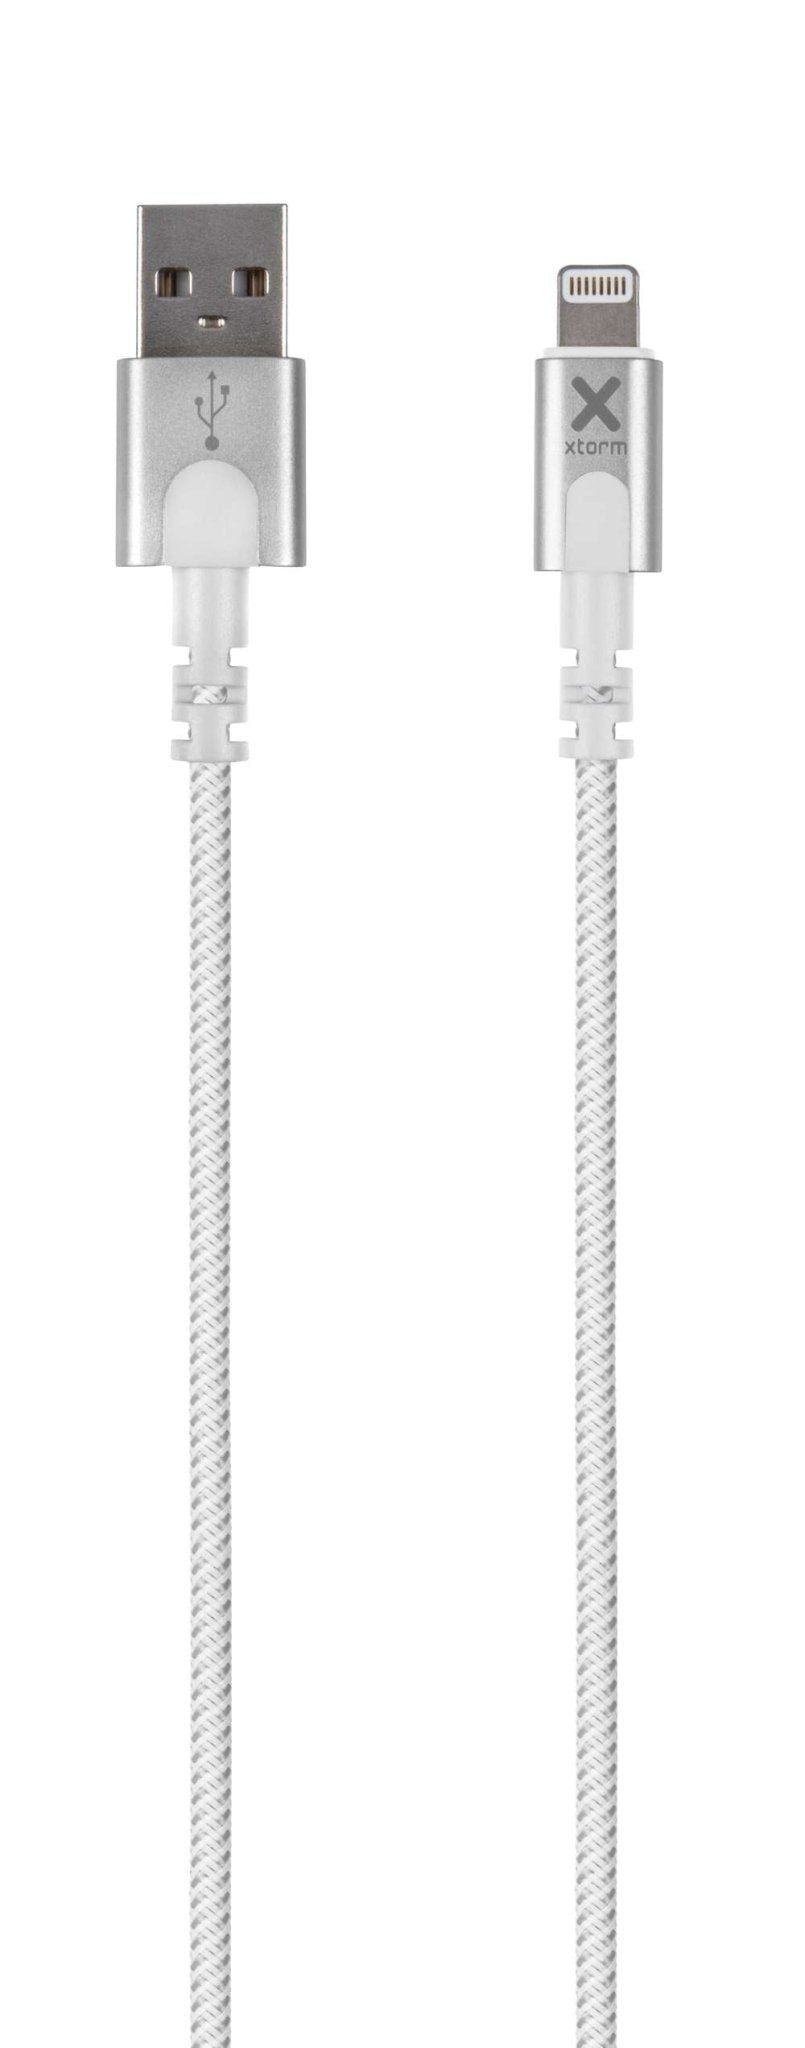 Original USB to Lightning Cable - 1 meter - Xtorm EU